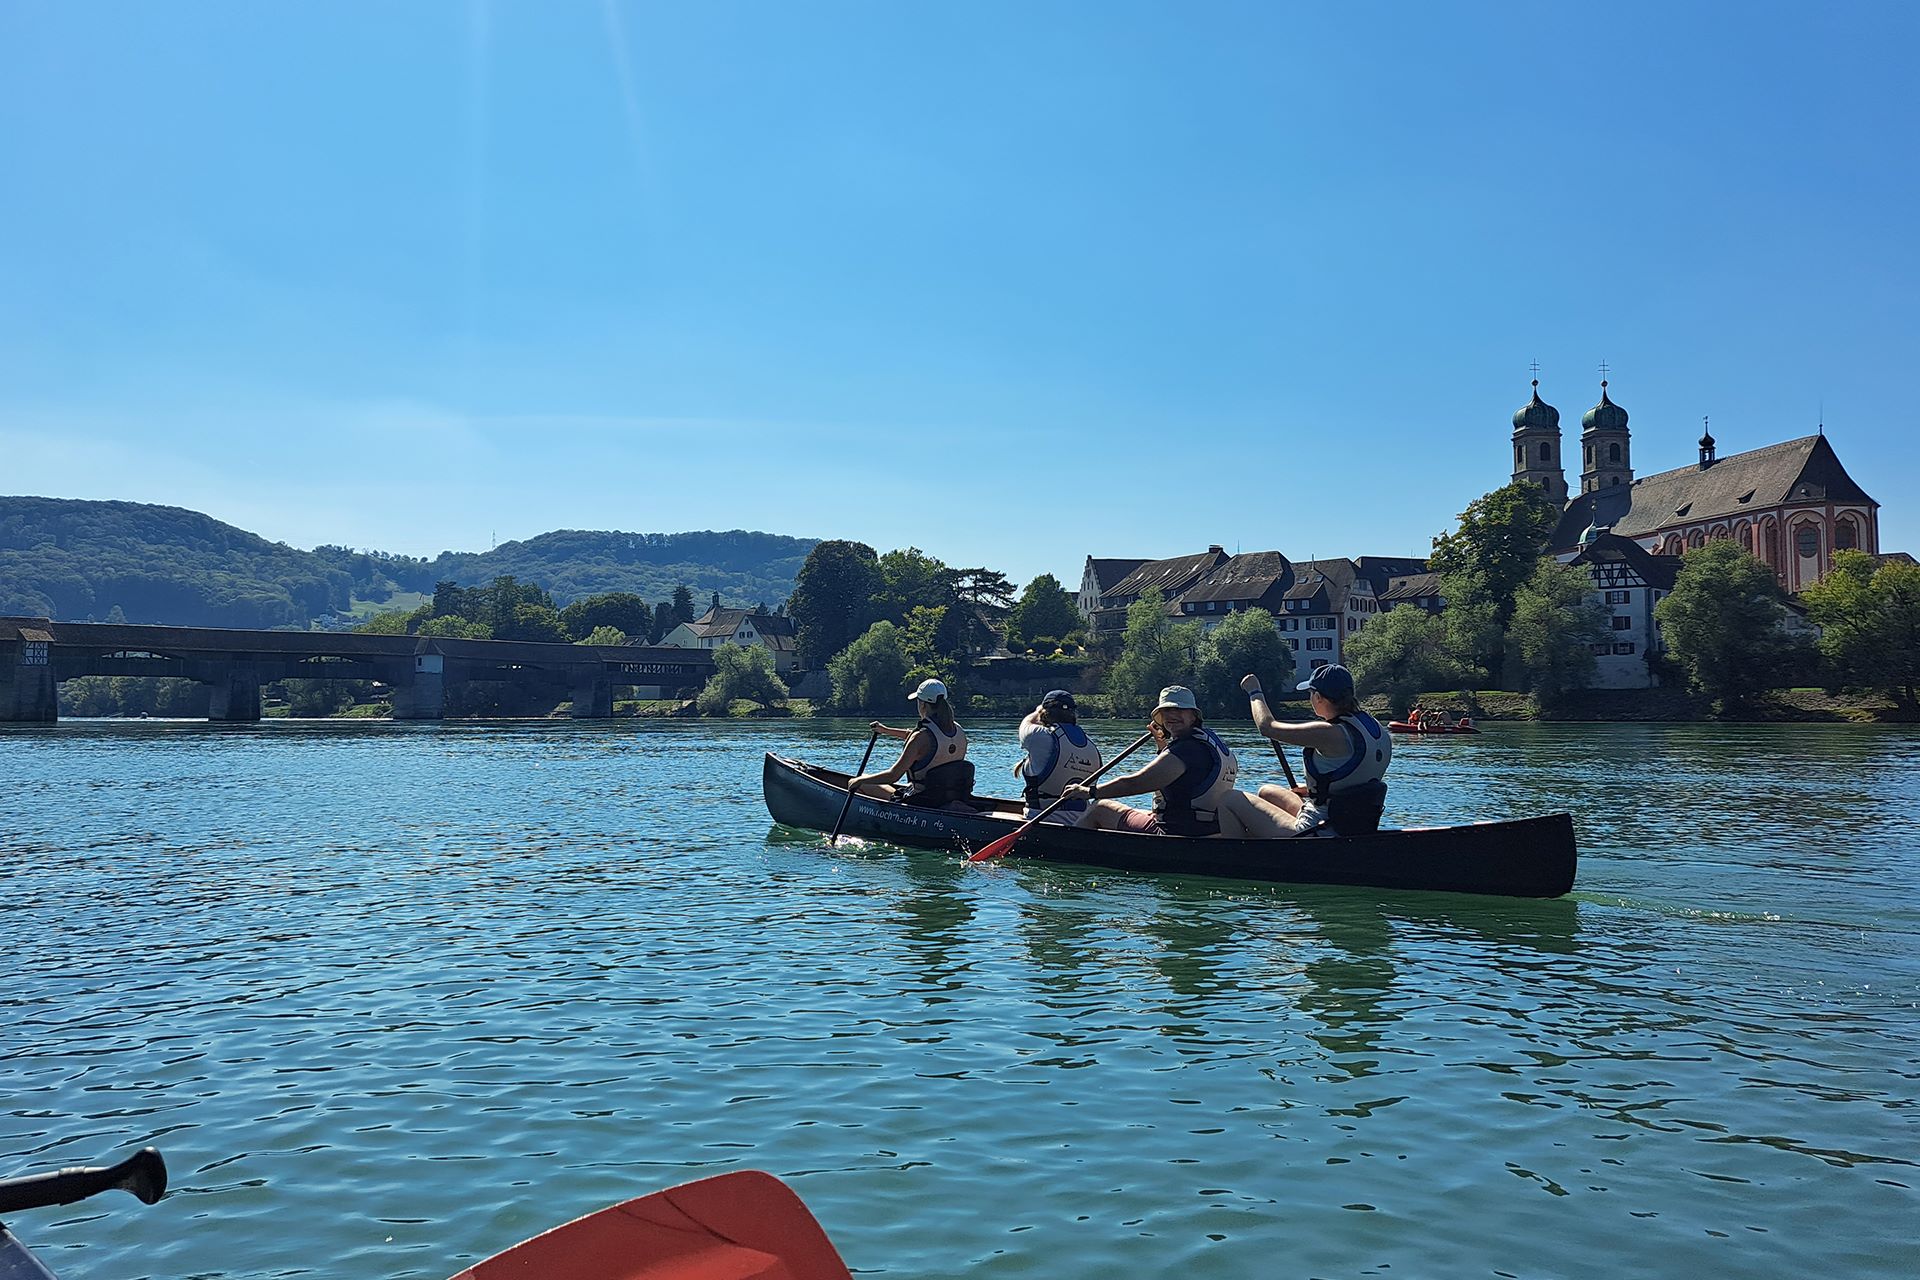 Kanutour auf dem Rhein für Jugendliche